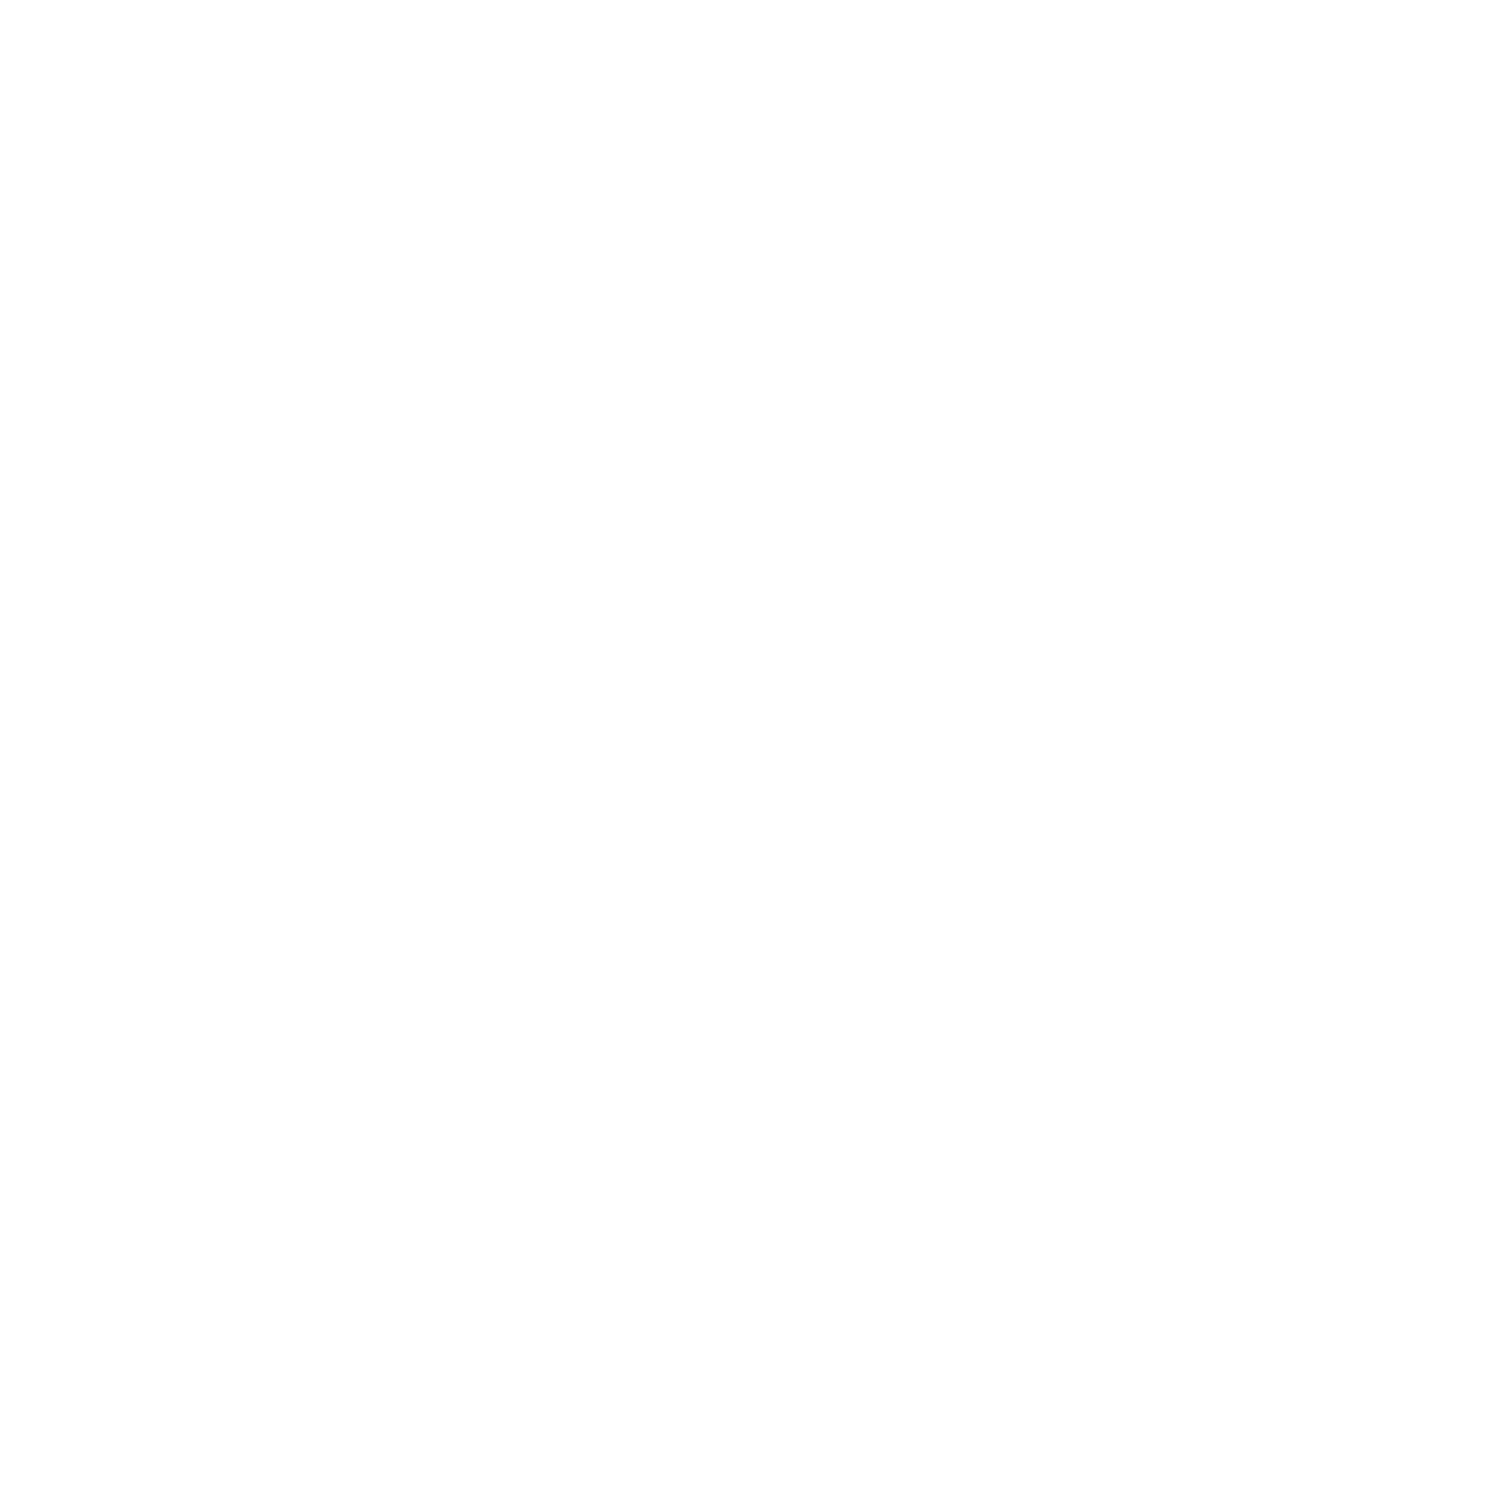 Chris Eder Design